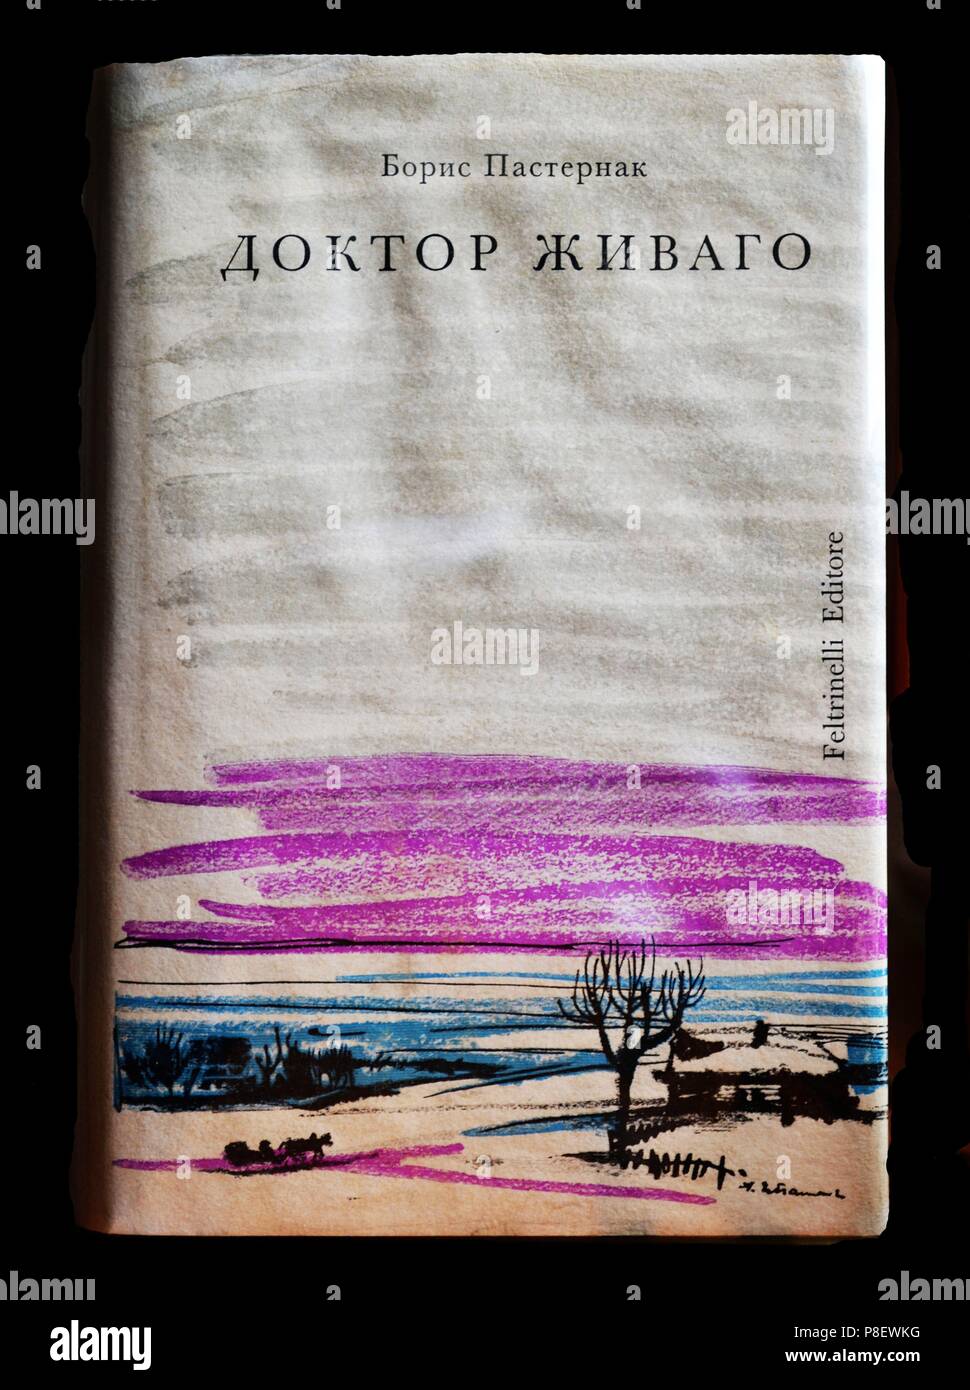 Abdeckung der ersten Ausgabe von Doktor Schiwago von Boris Pasternak. Museum: private Sammlung. Stockfoto